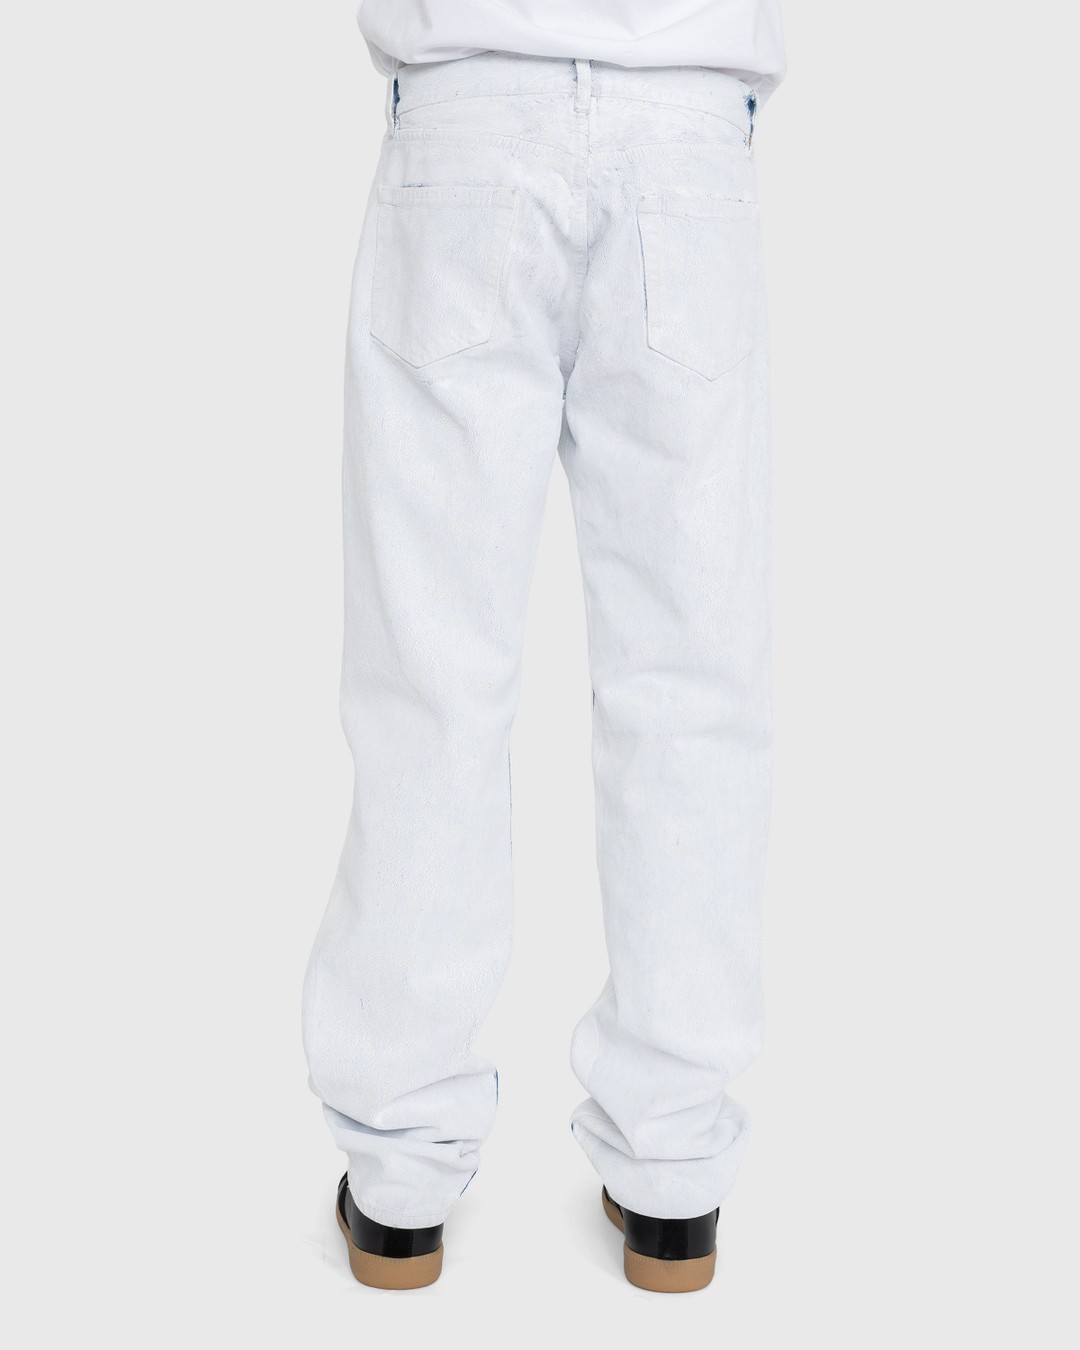 Maison Margiela – 5-Pocket Paint Jeans White - Pants - White - Image 4